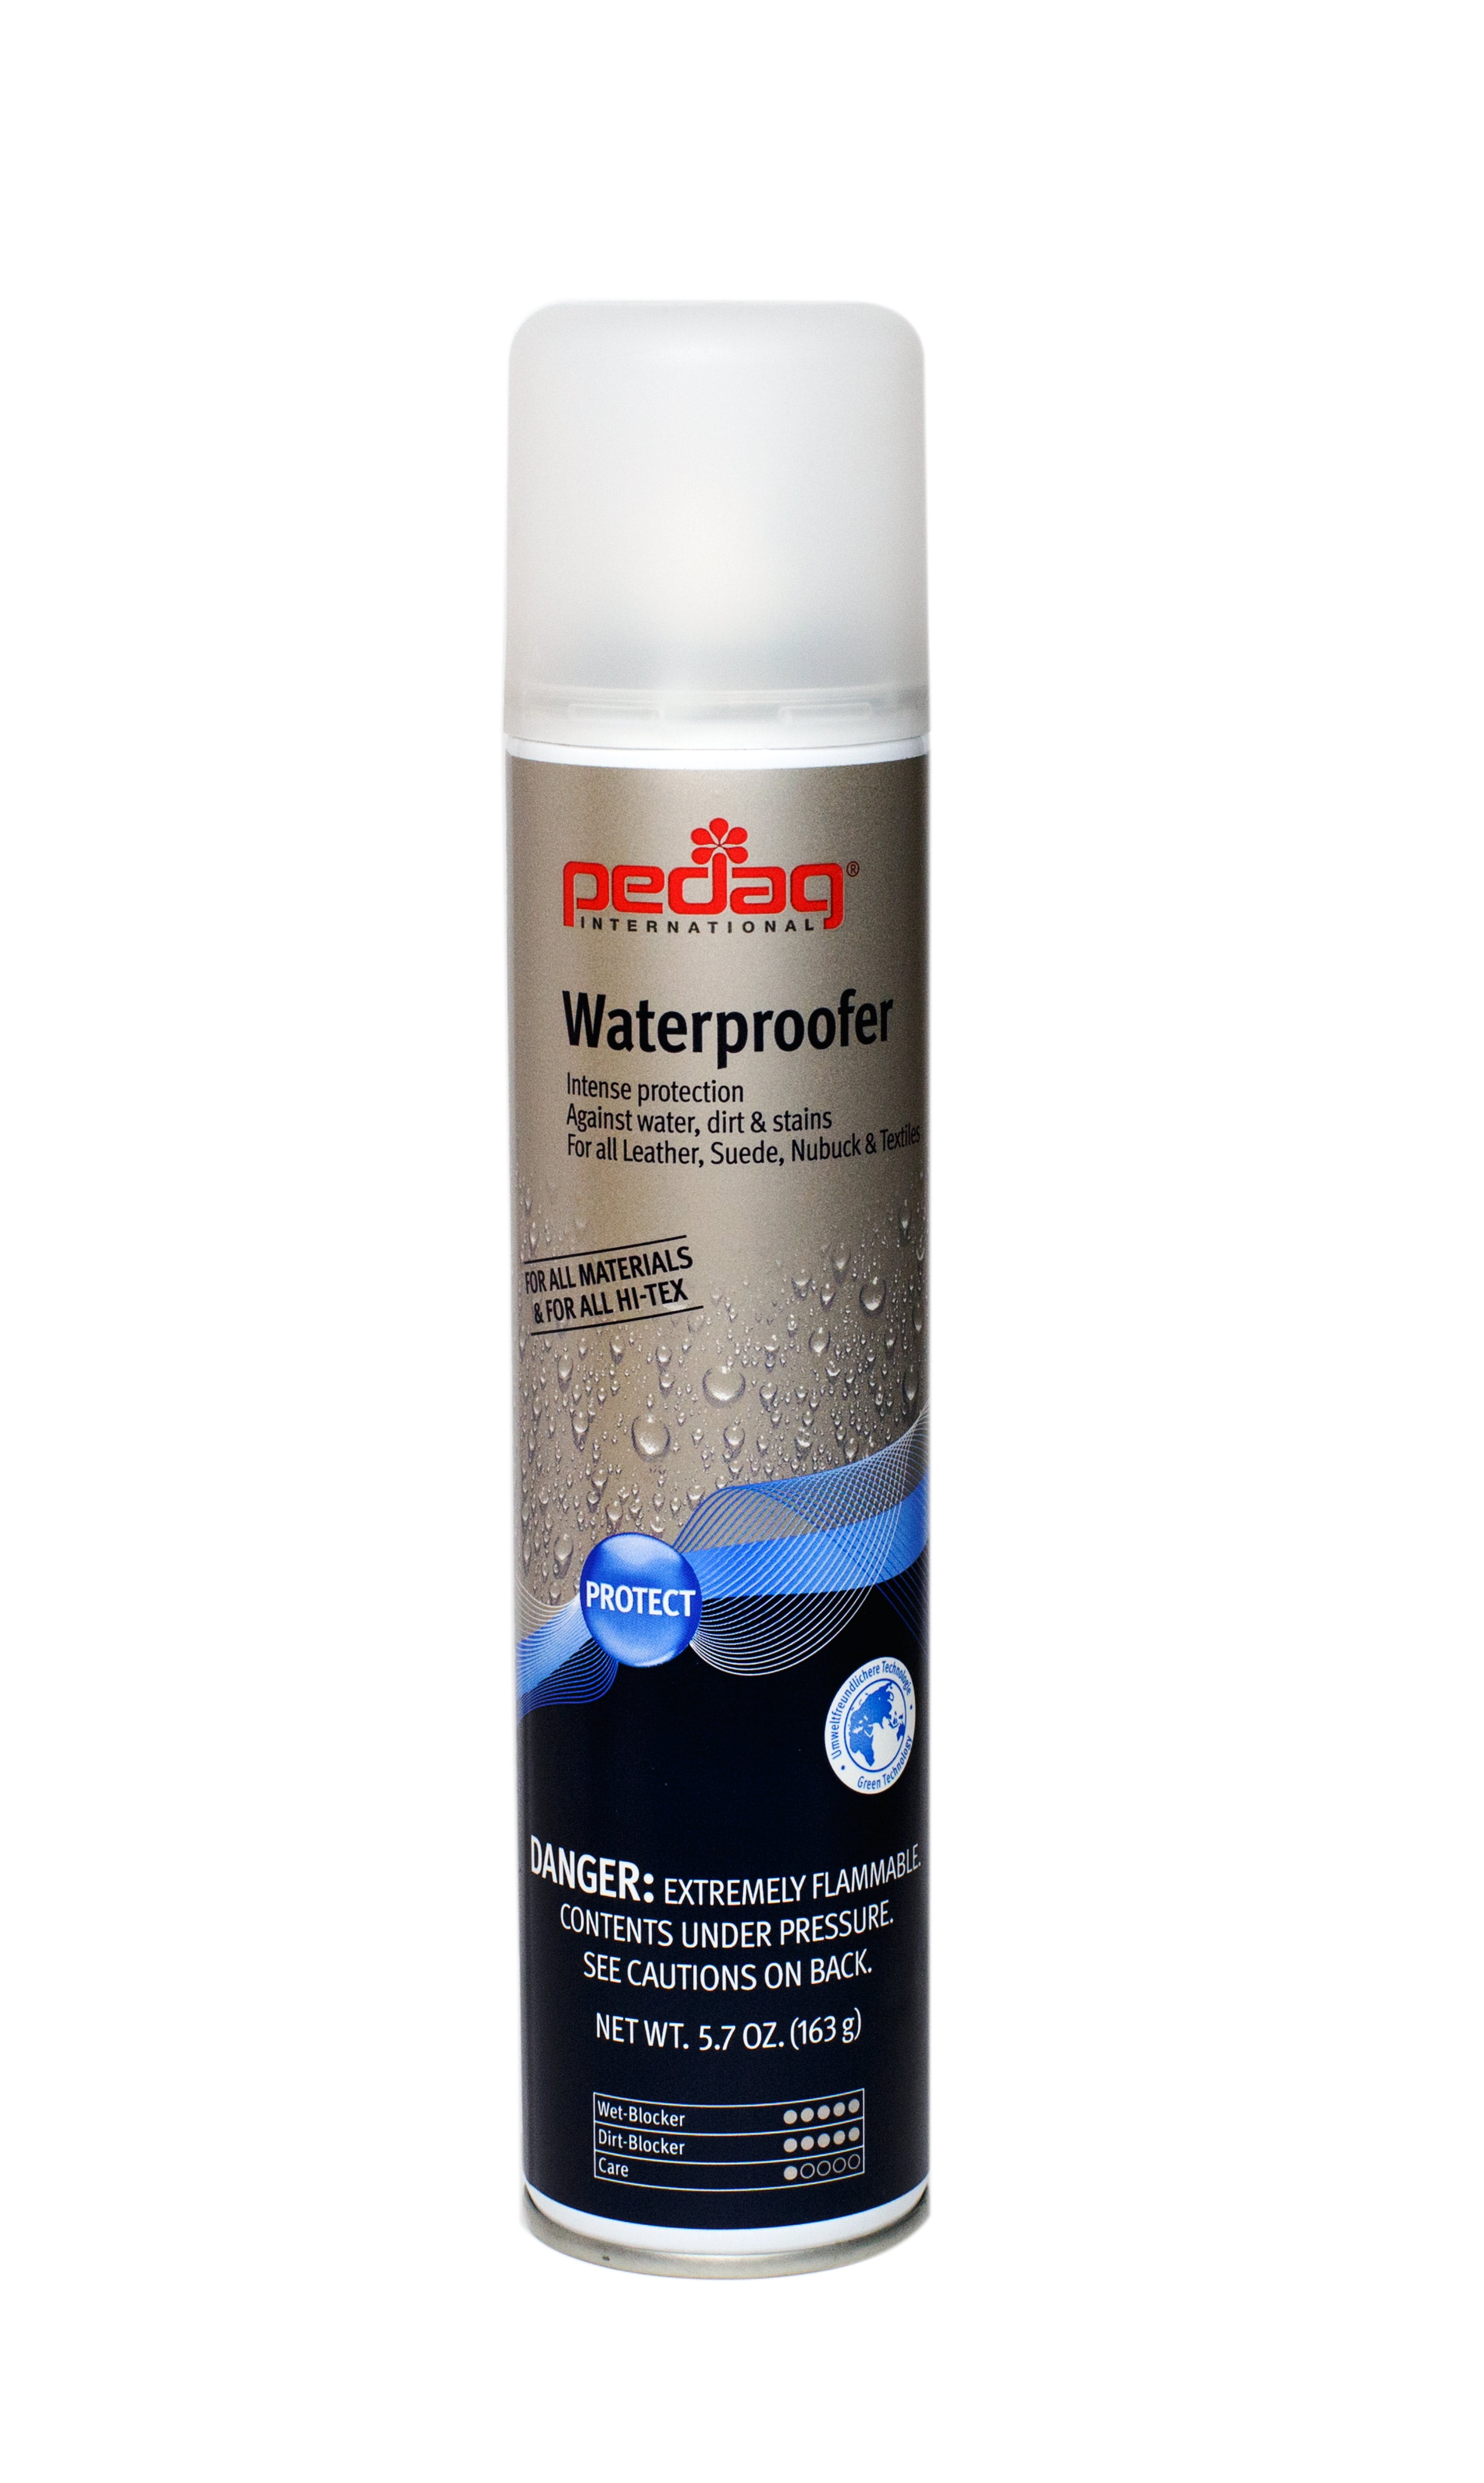 Suede Waterproof Spray – VIBERG